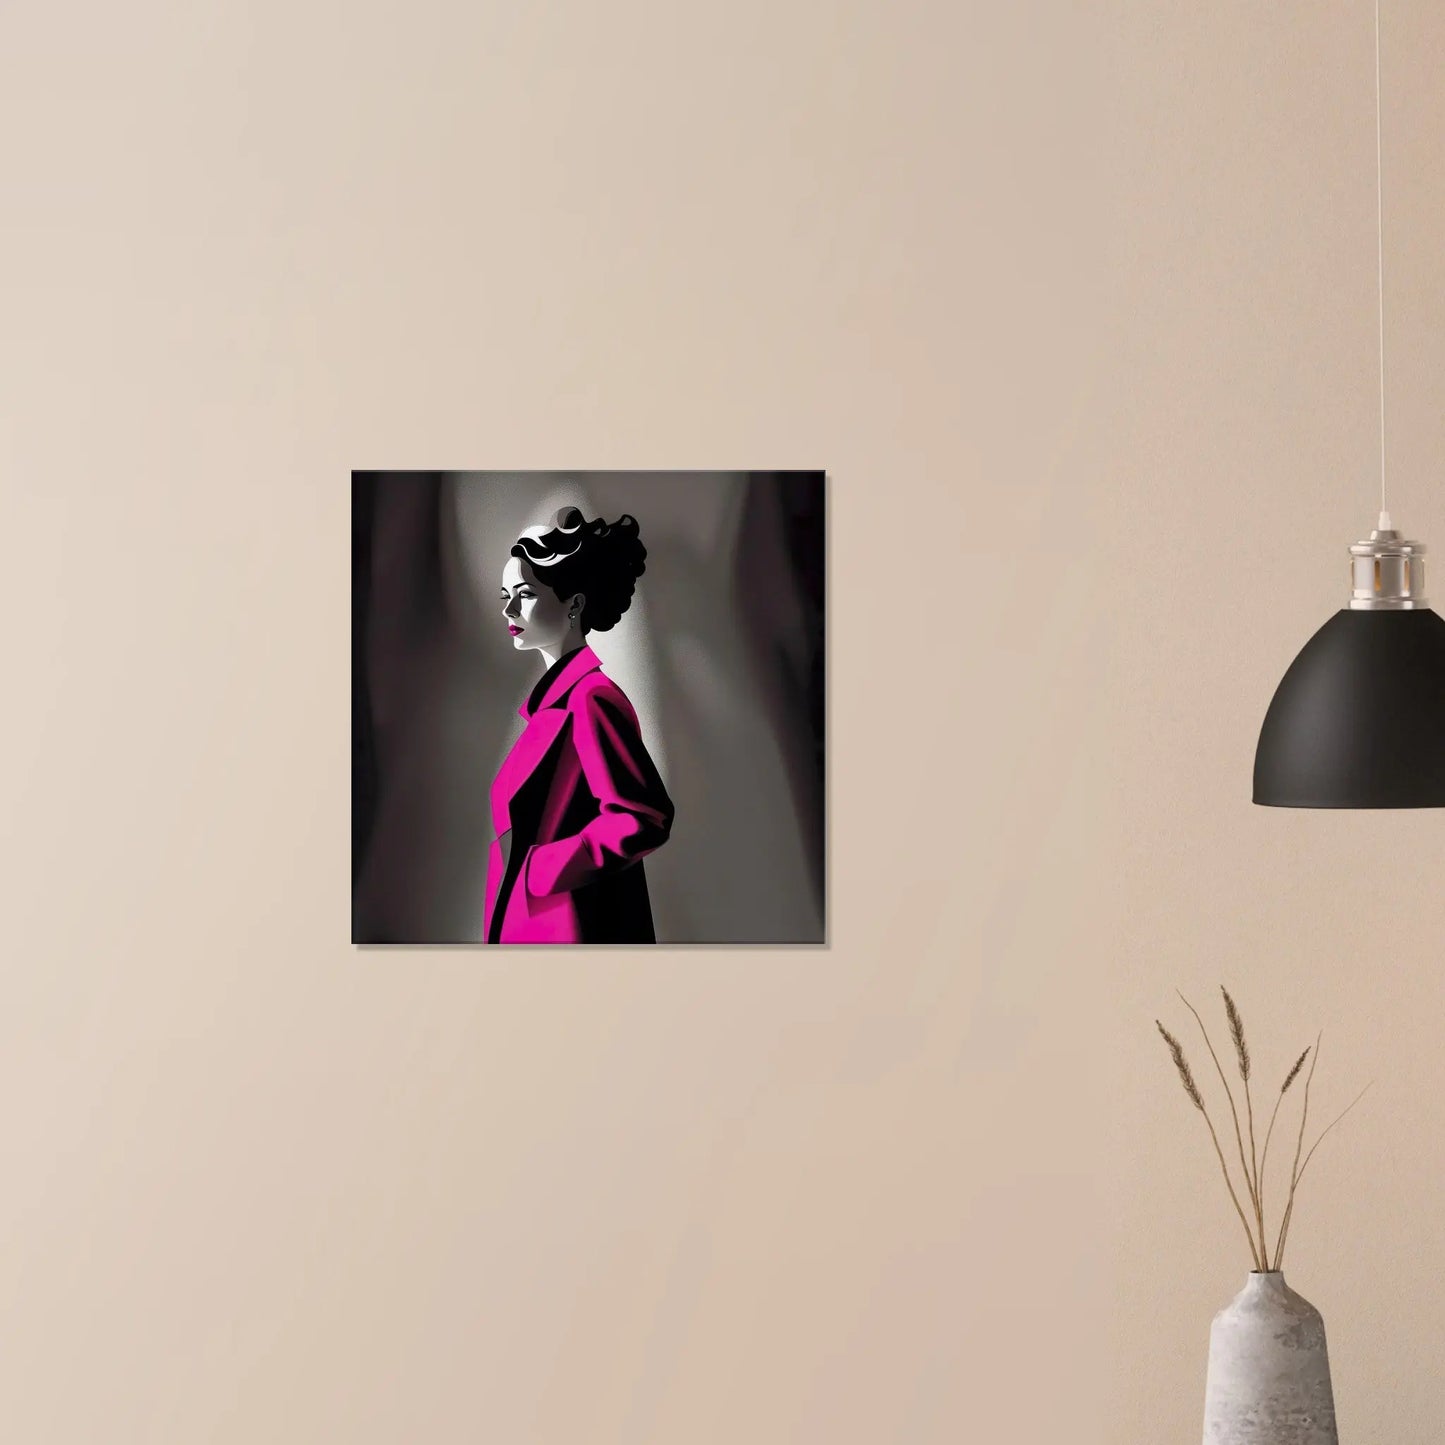 Leinwandbild - Frau im rosa Mantel - Schwarz-Weiß Stil, KI-Kunst - RolConArt, Schwarz-Weiß mit Akzentfarben, 